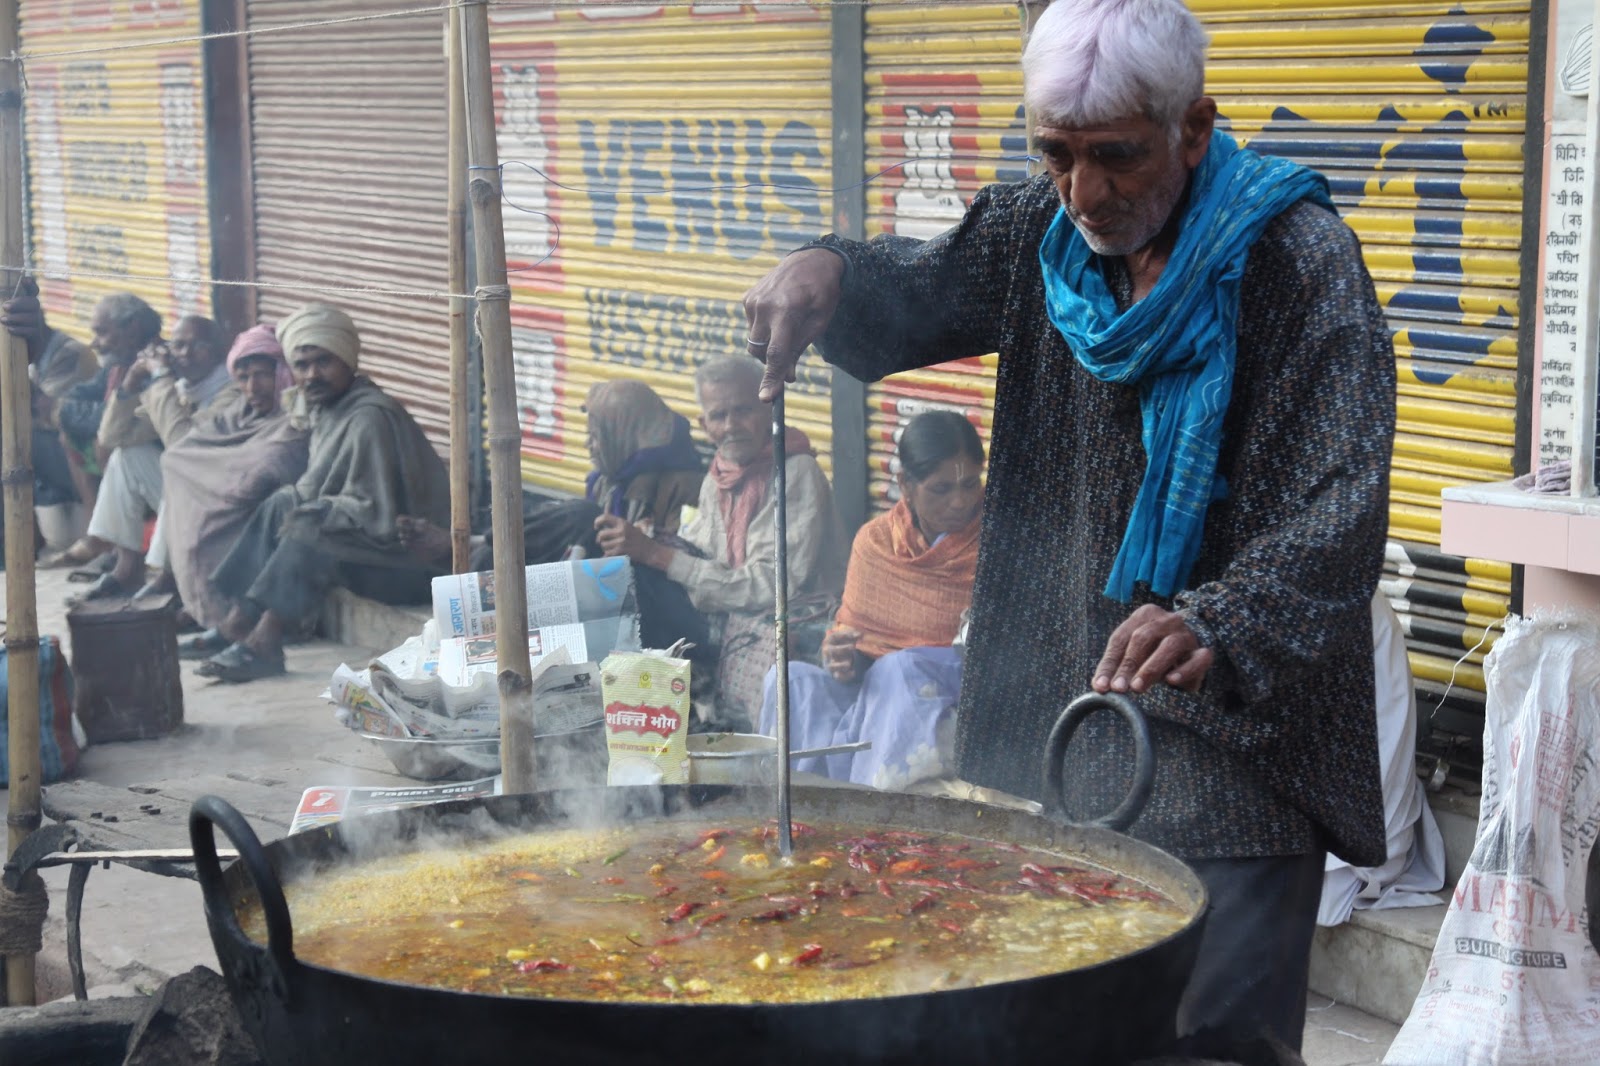 Indianos esperam um caldeirão de curry em algum lugar da Índia: ilustra a seção a respeito dos textos das linhas de ''Ting / O Caldeirão'', um dos 64 hexagramas do I Ching, o Livro das Mutações